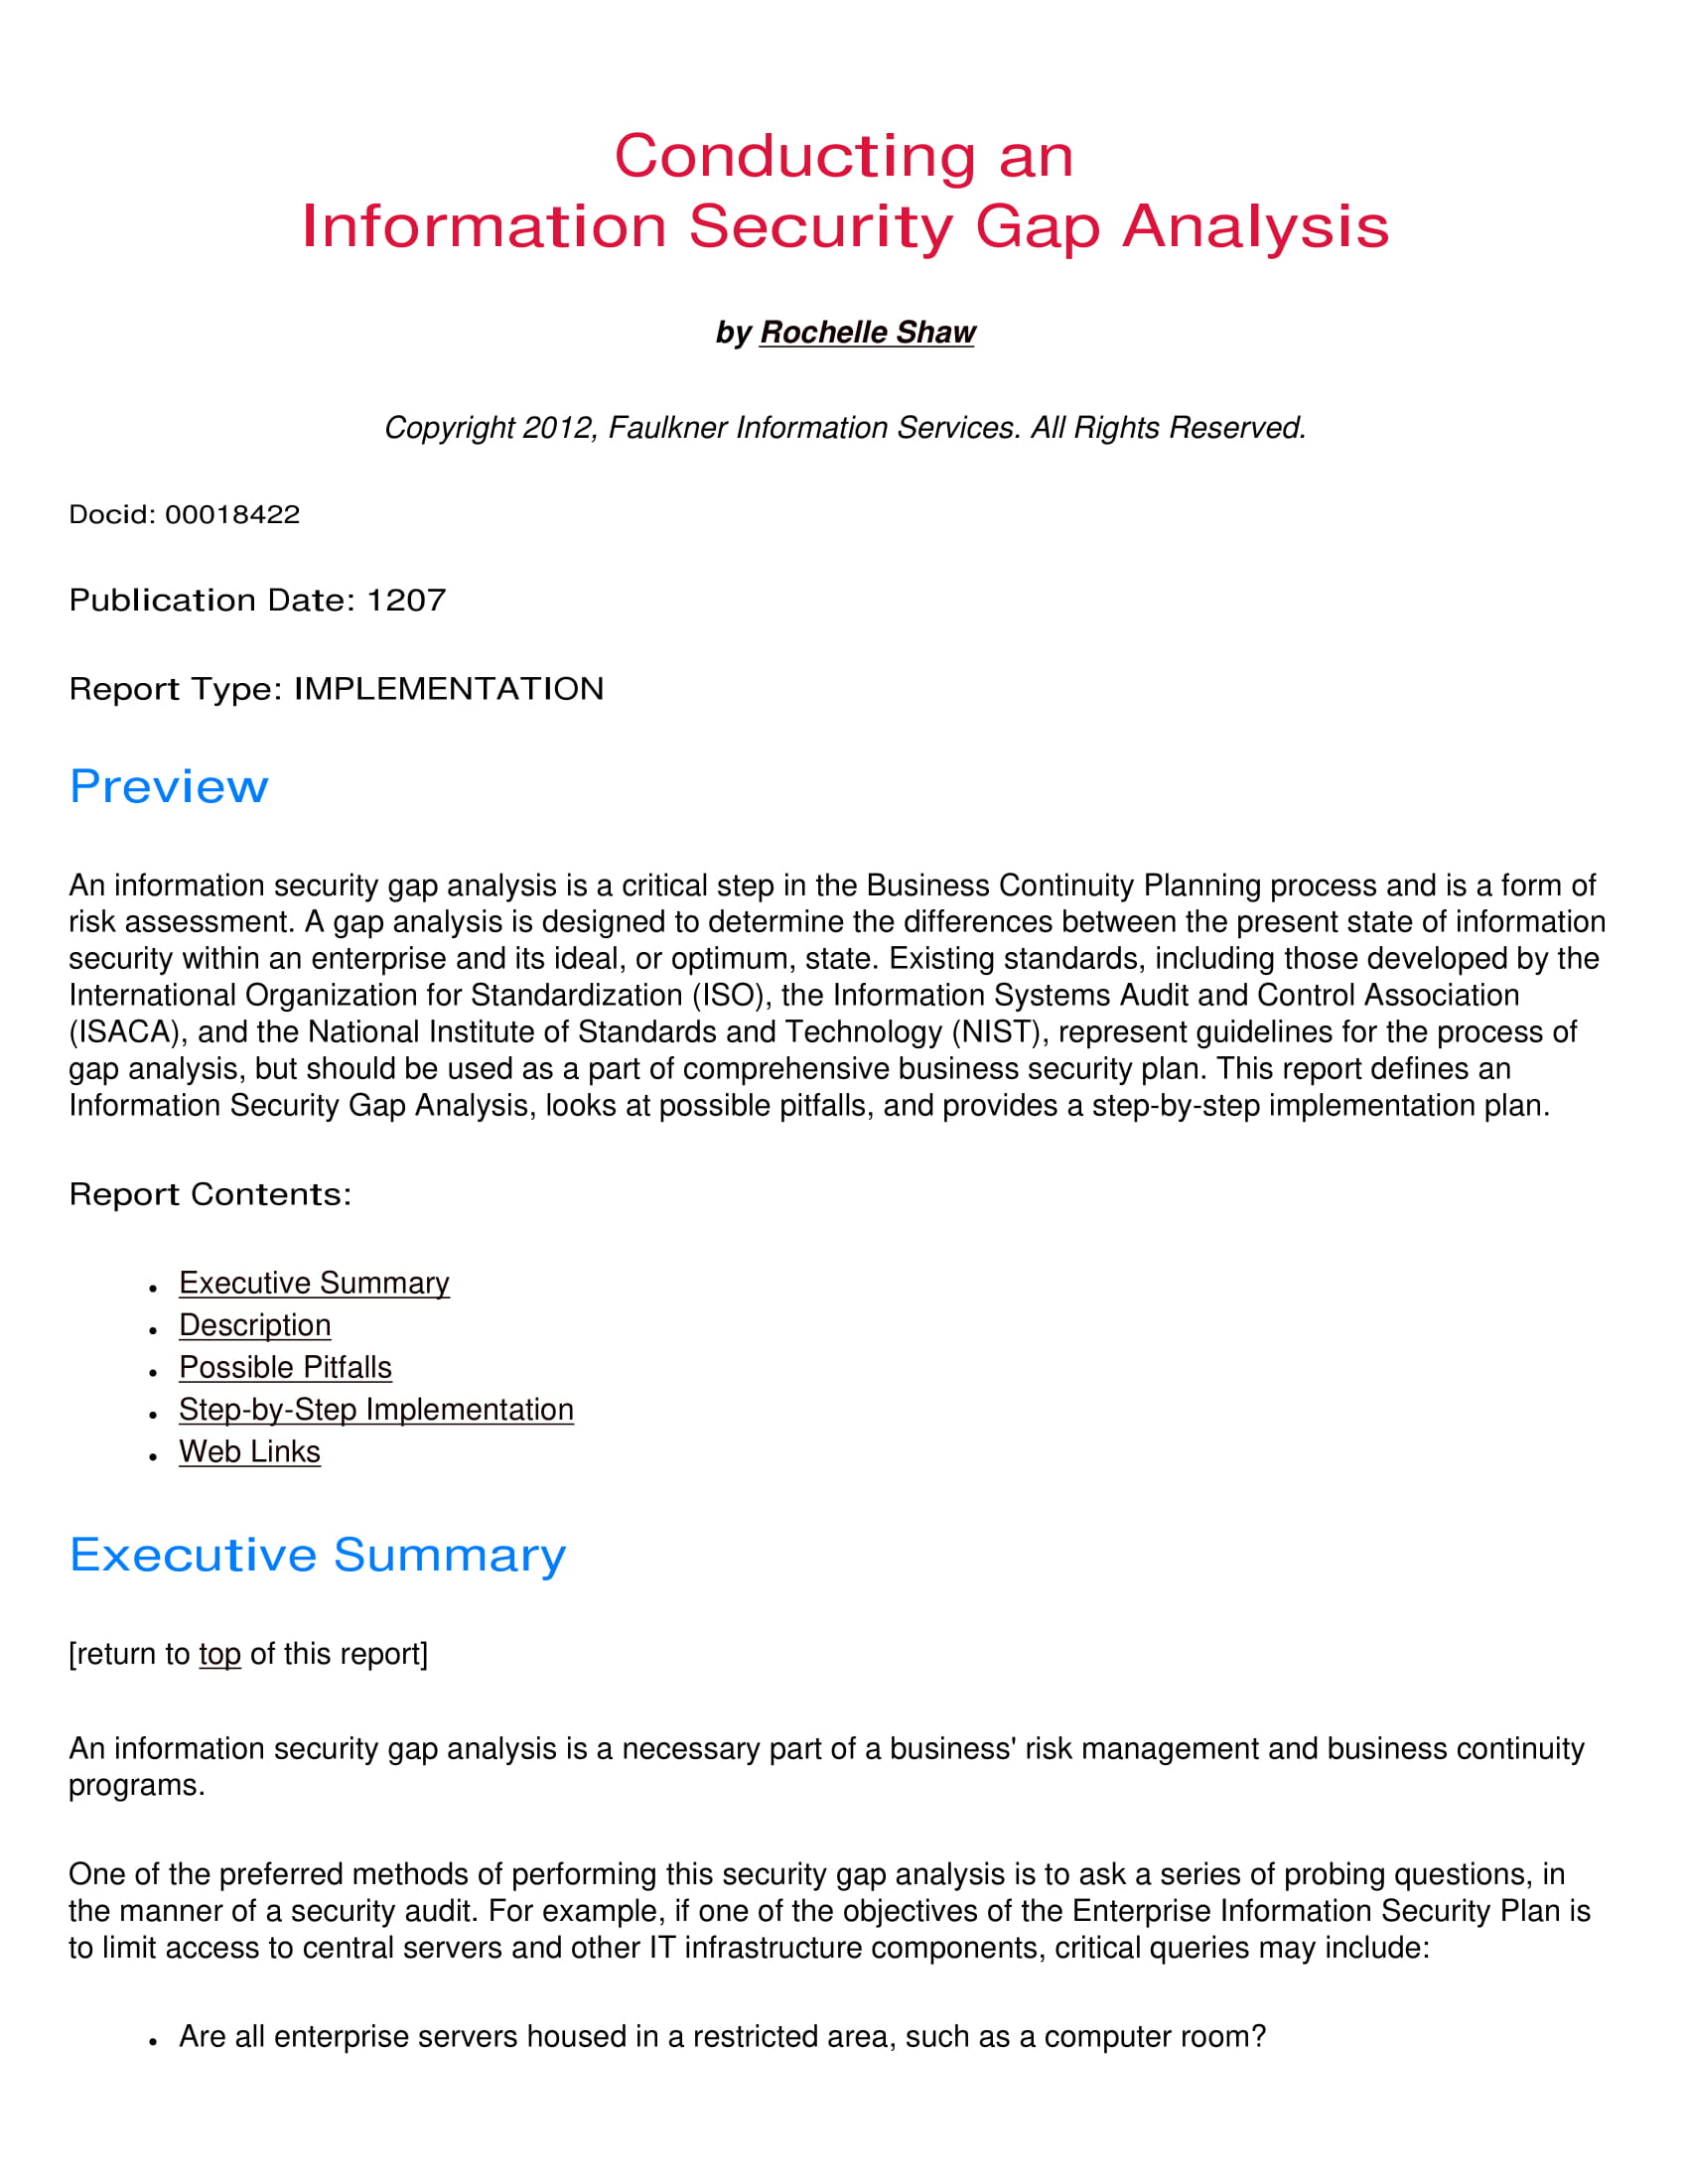 information security gap analysis pdf format download